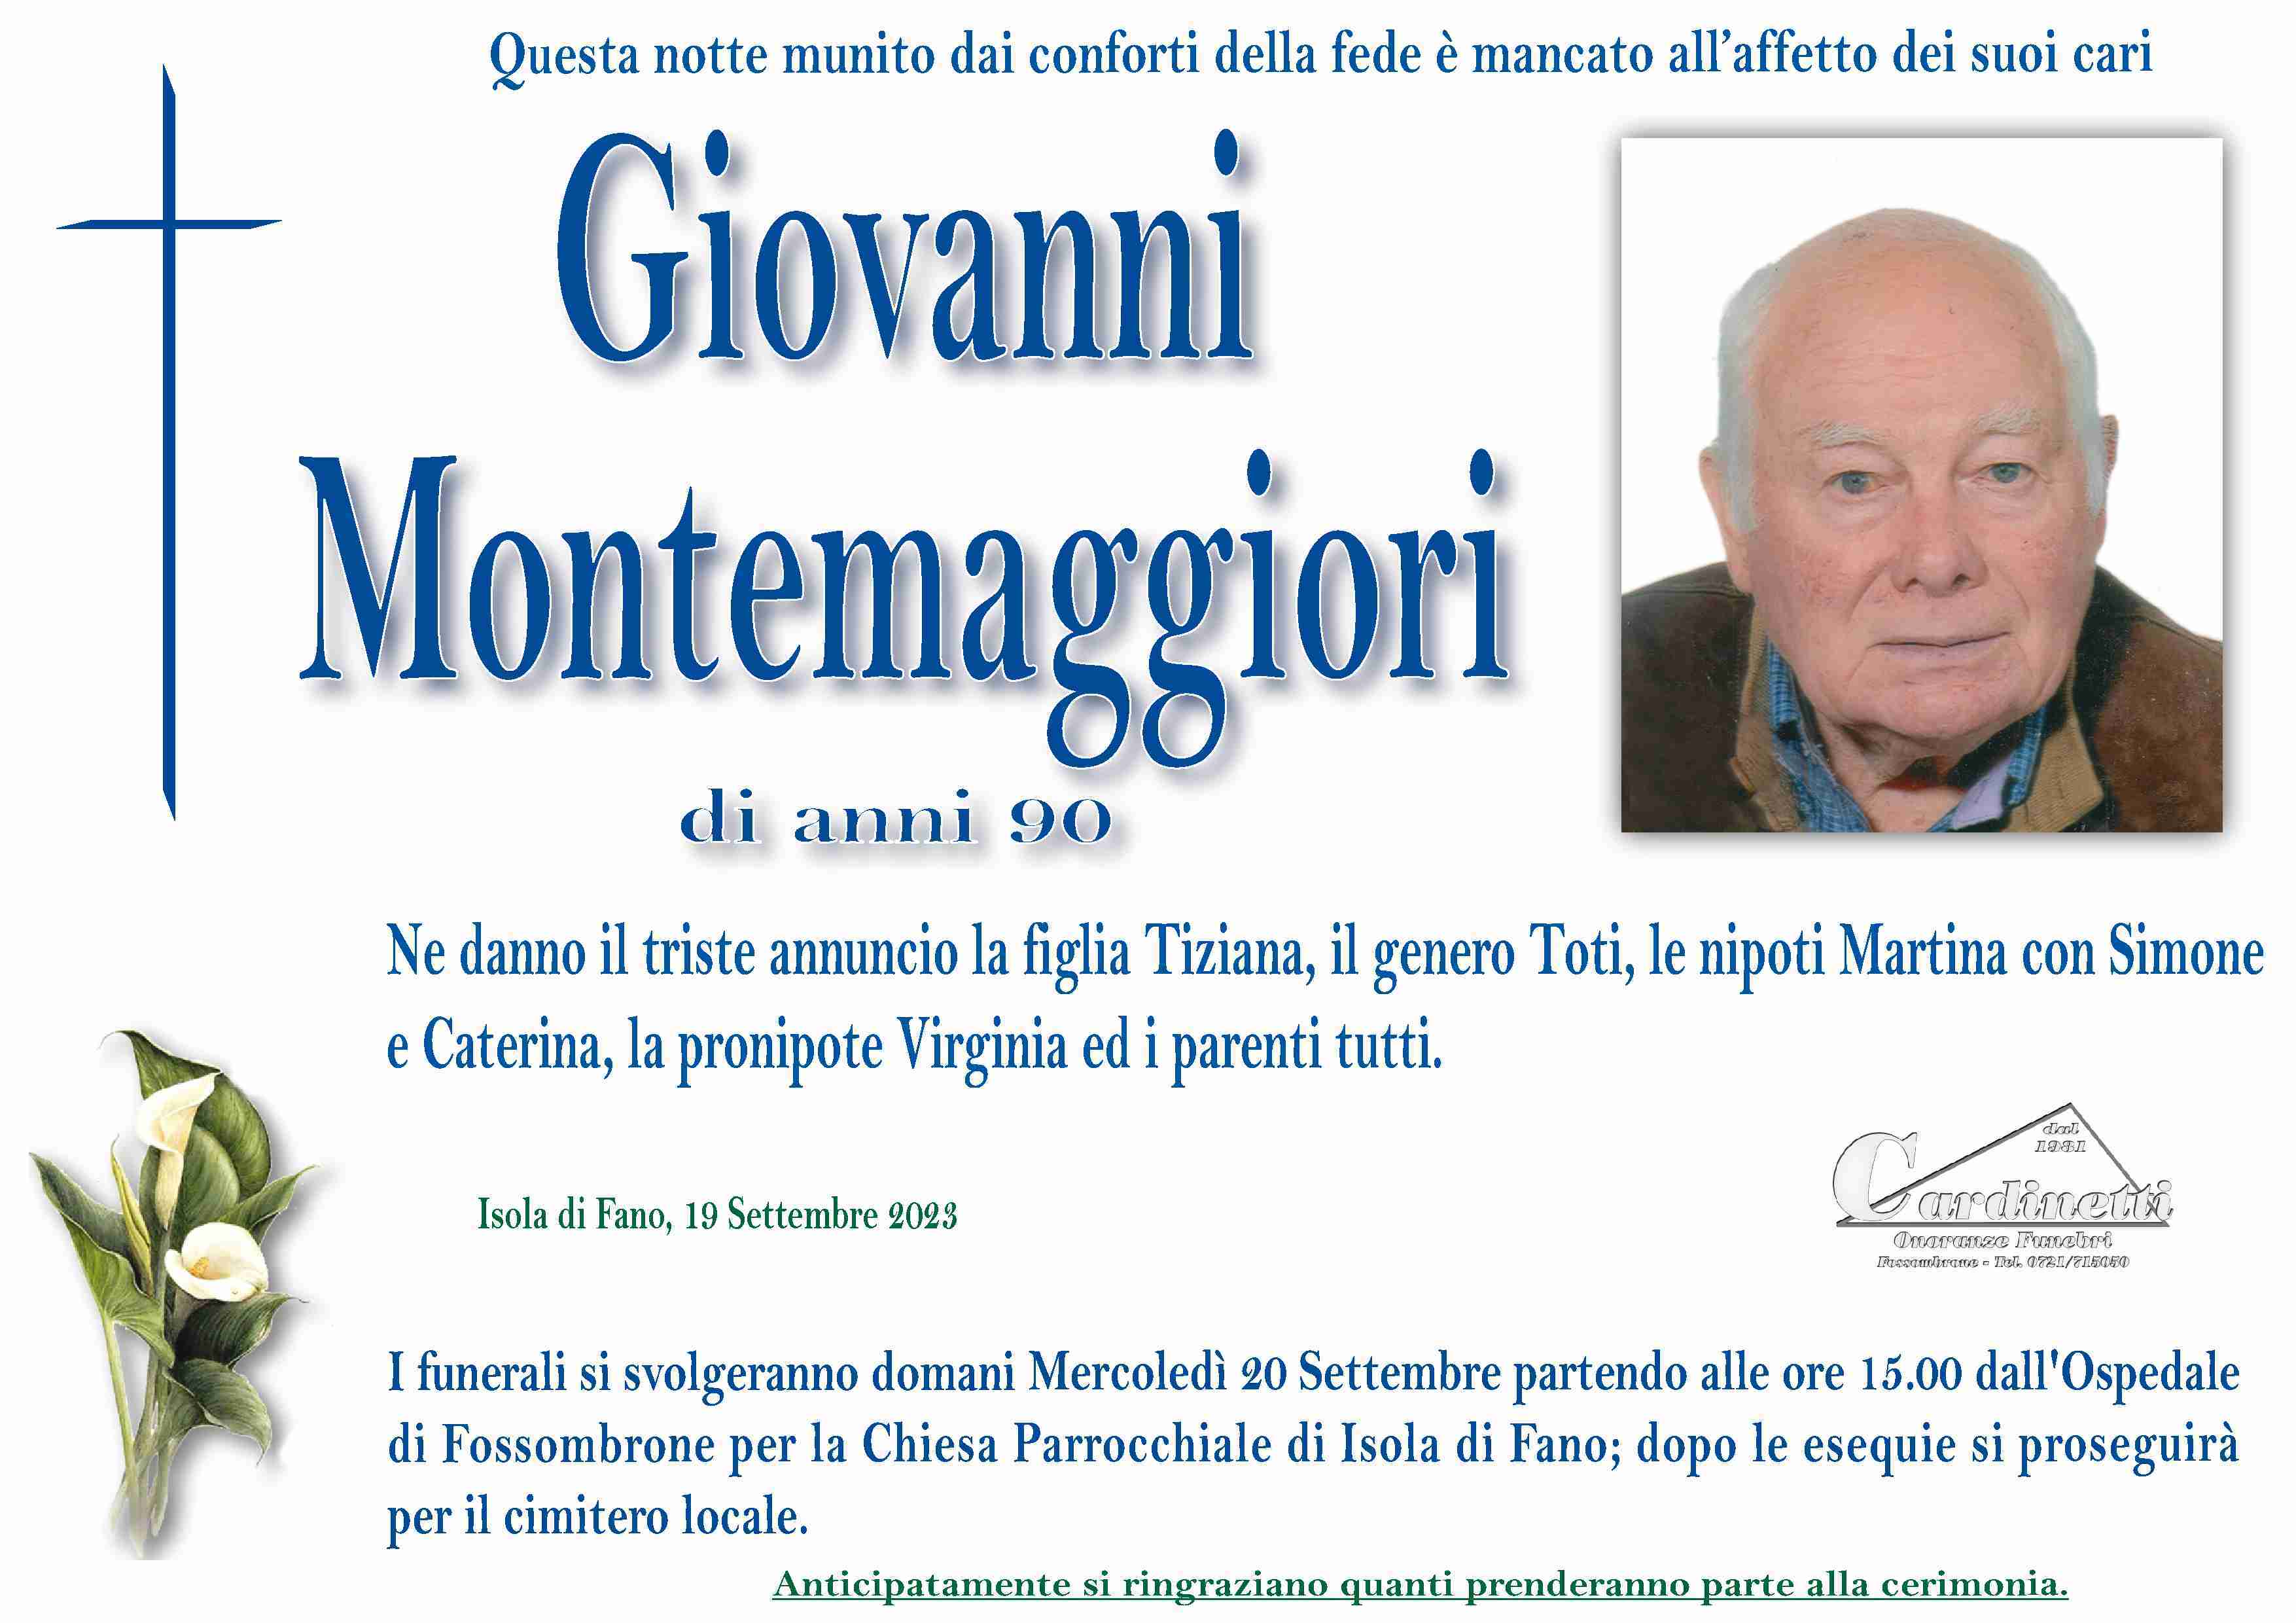 Giovanni Montemaggiori